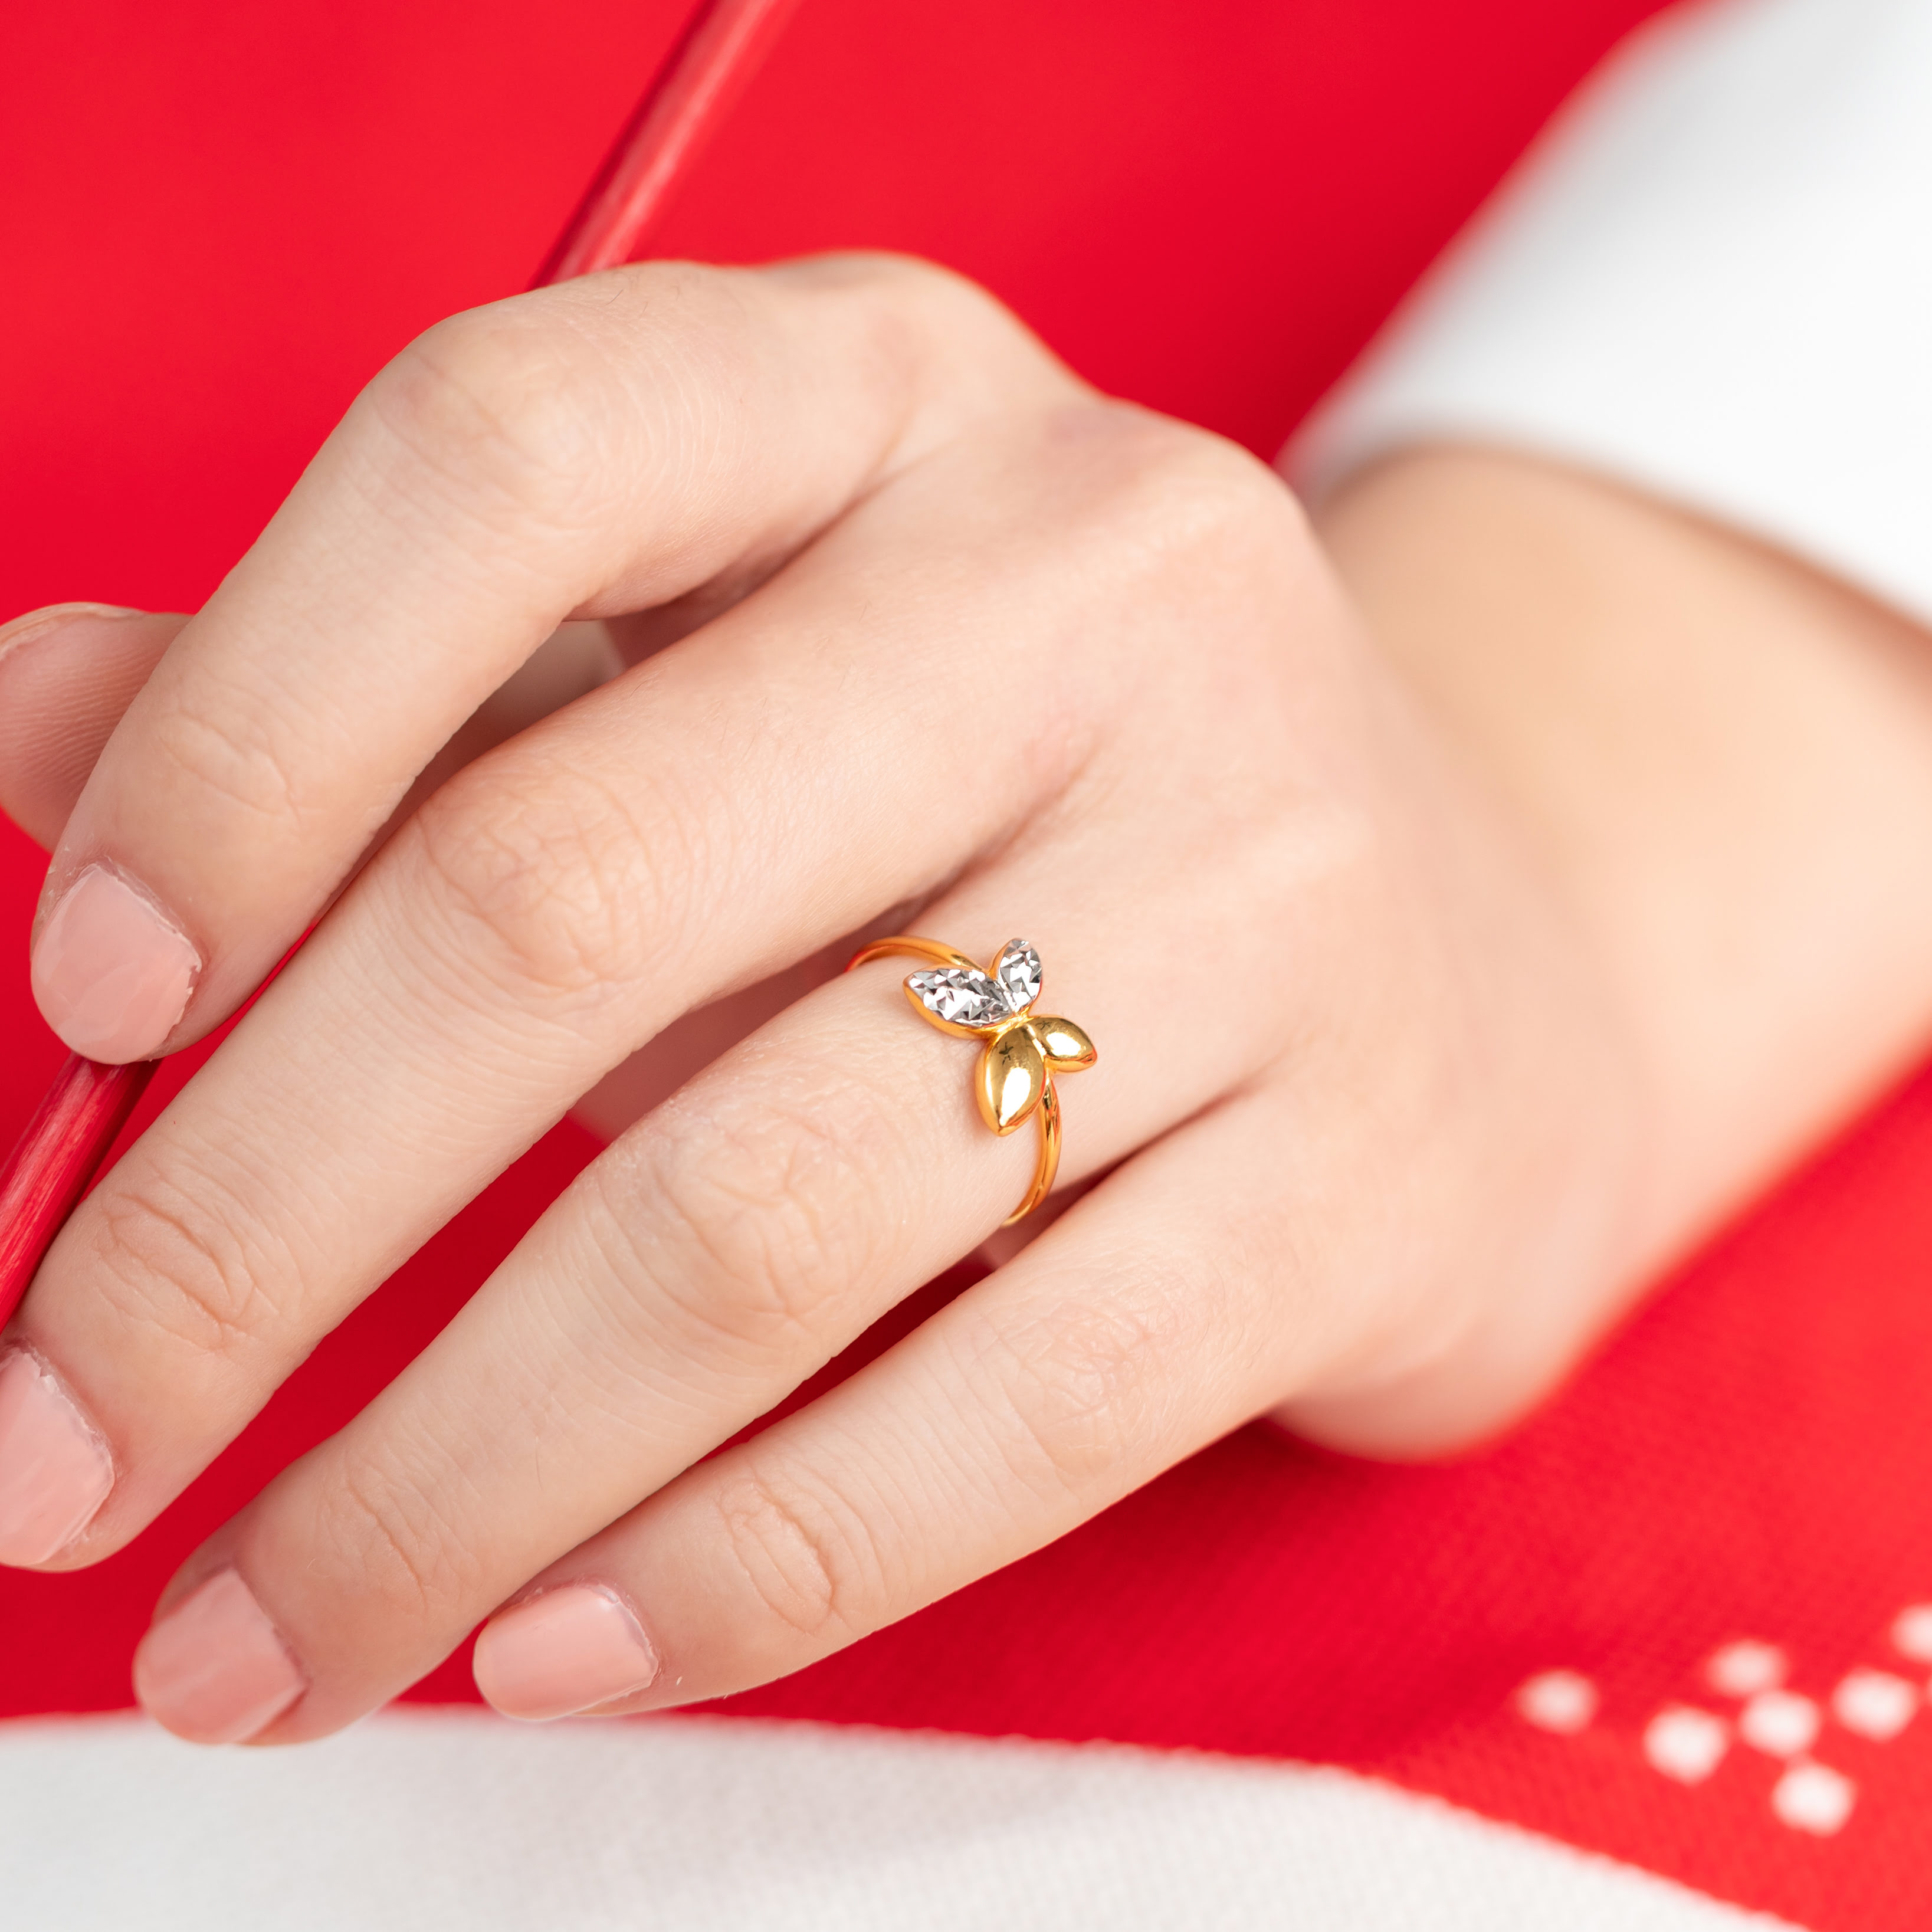 Gem O Sparkle 925 Sterling Silver Rose Gold Plated Butterfly Design Ring  Adjustable Finger Ring For Women Girls (Gifts) - Gem O Sparkle